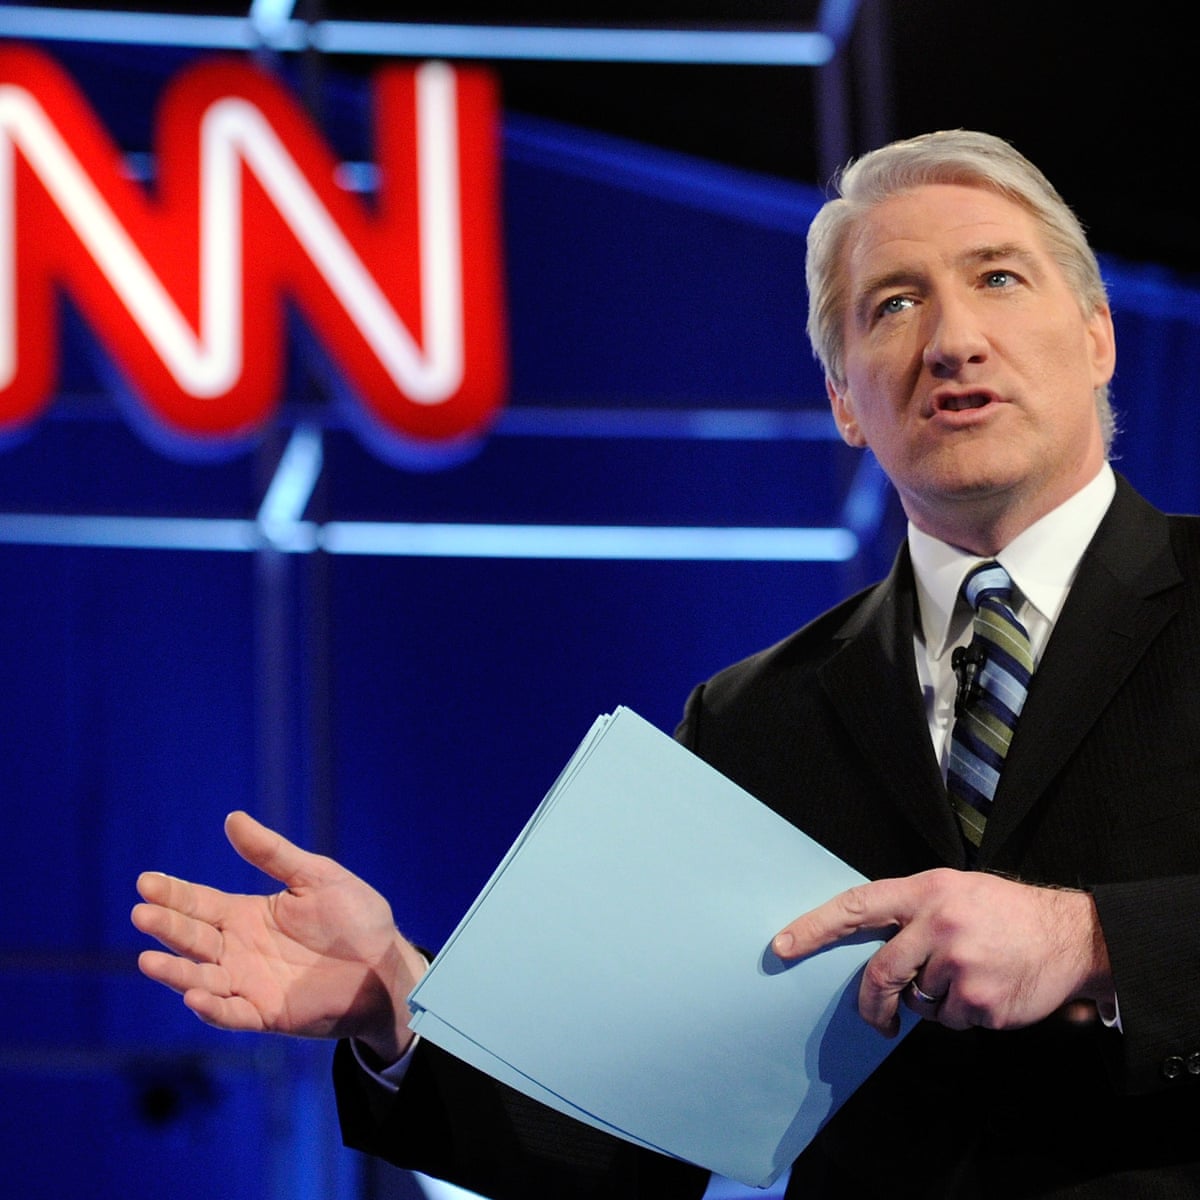 CNN's John King, cult hero of US election, nominated for UK award, CNN